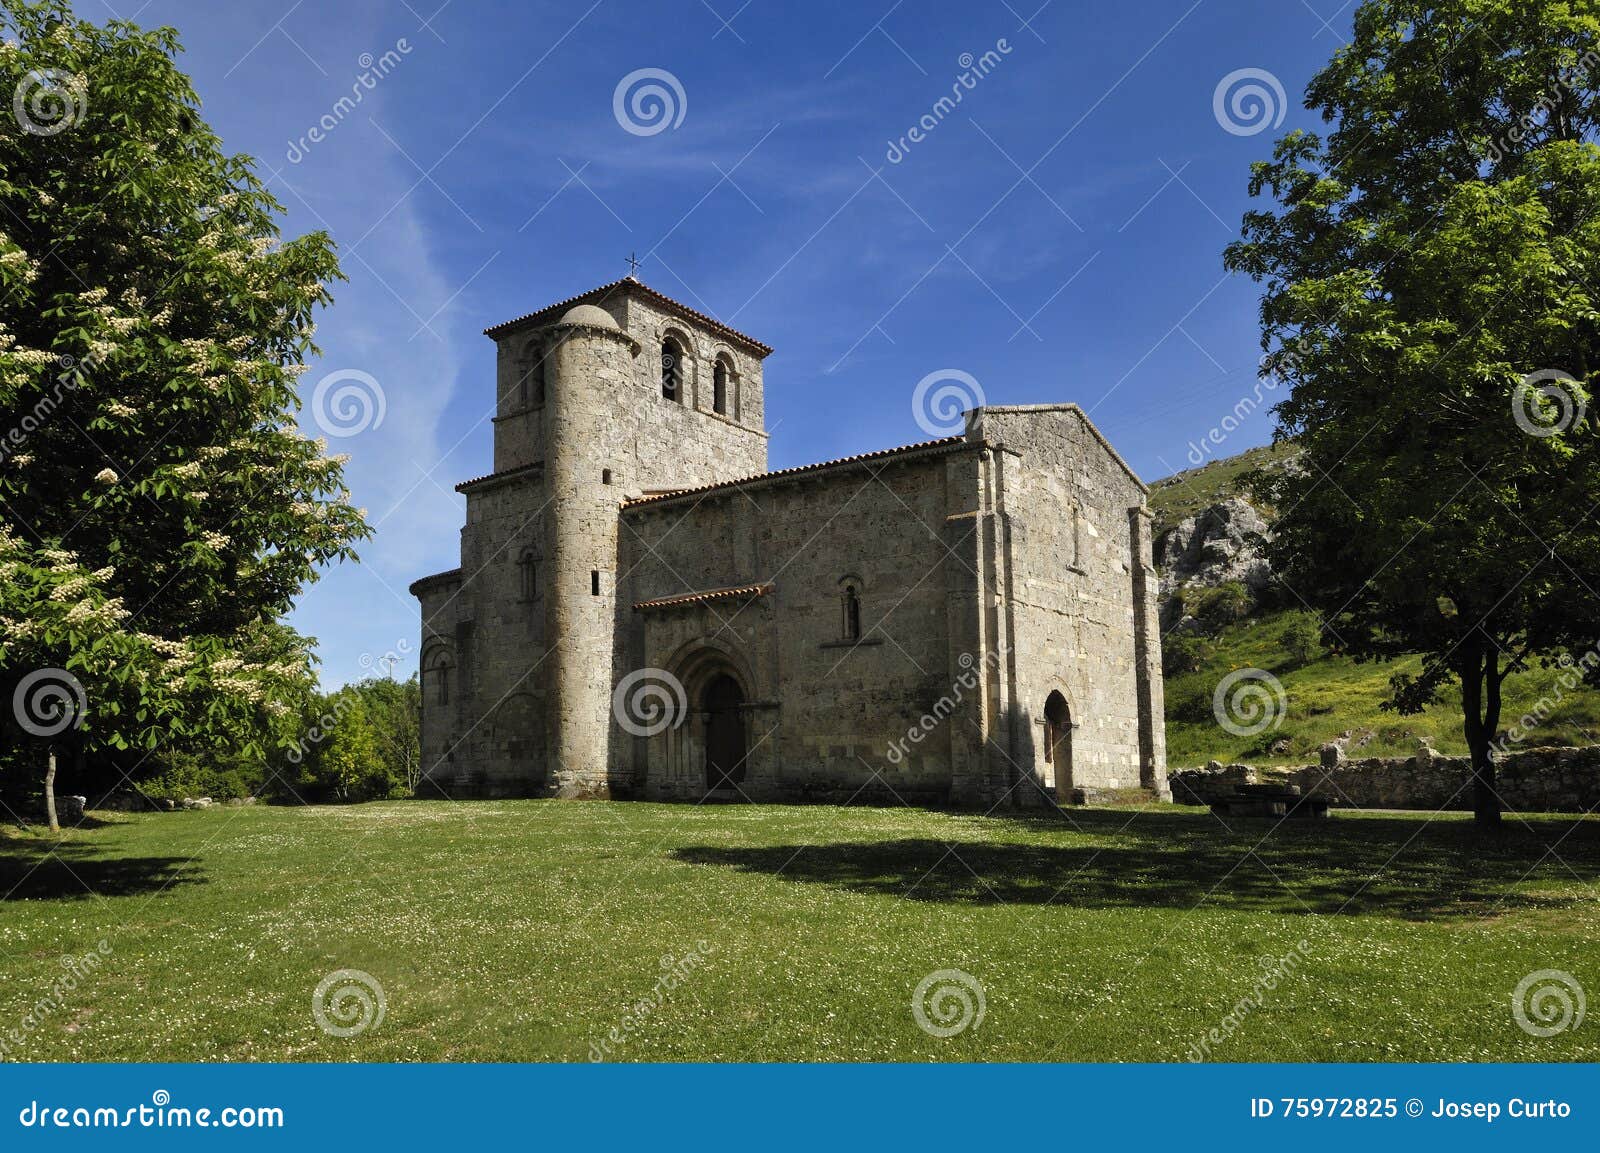 chapel of our lady of the valley, monasterio de rodilla, la bureba,